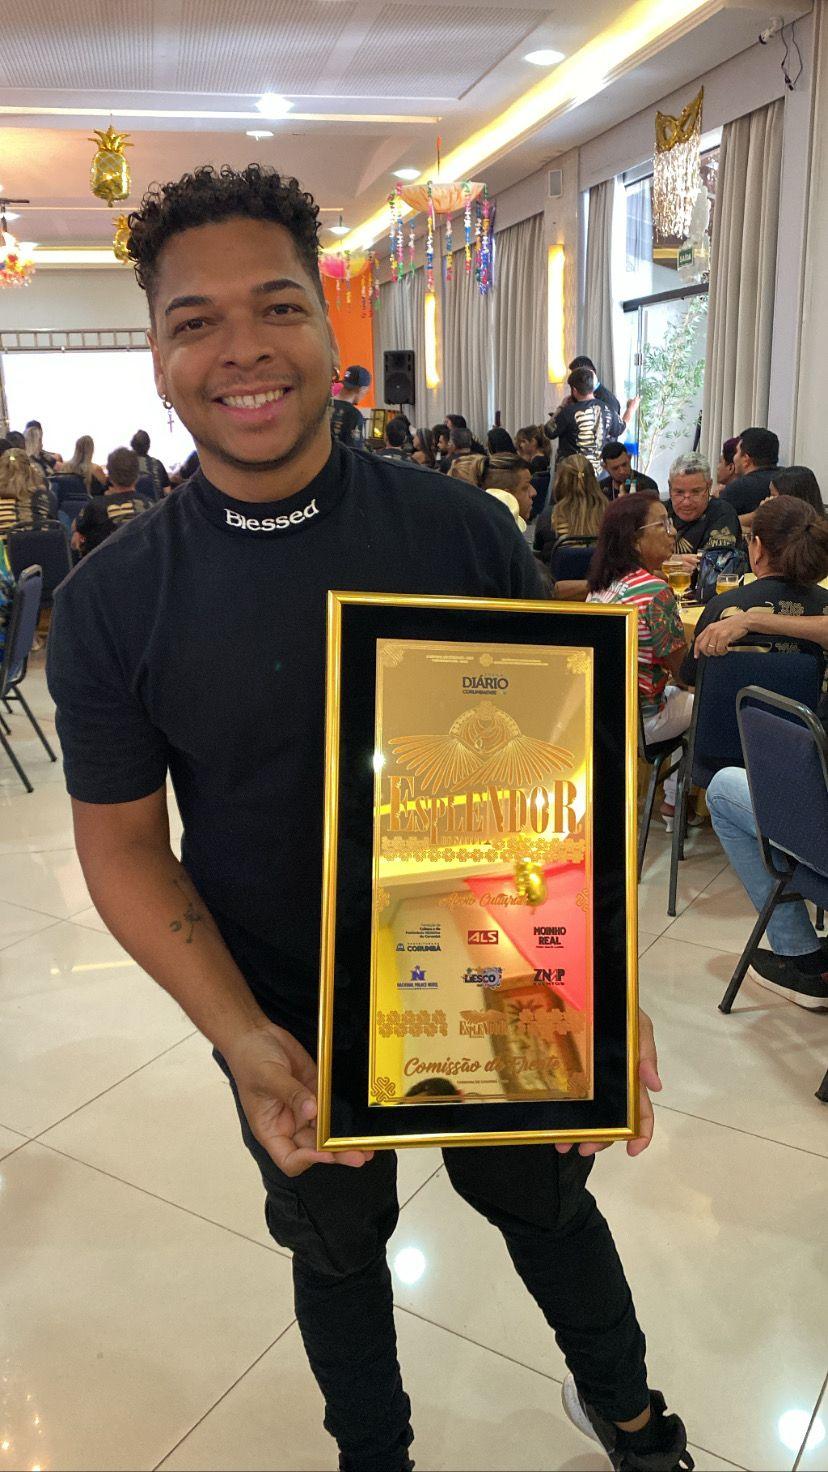 Escola que homenageou Dourados vence prêmio Esplendor do Samba em Corumbá